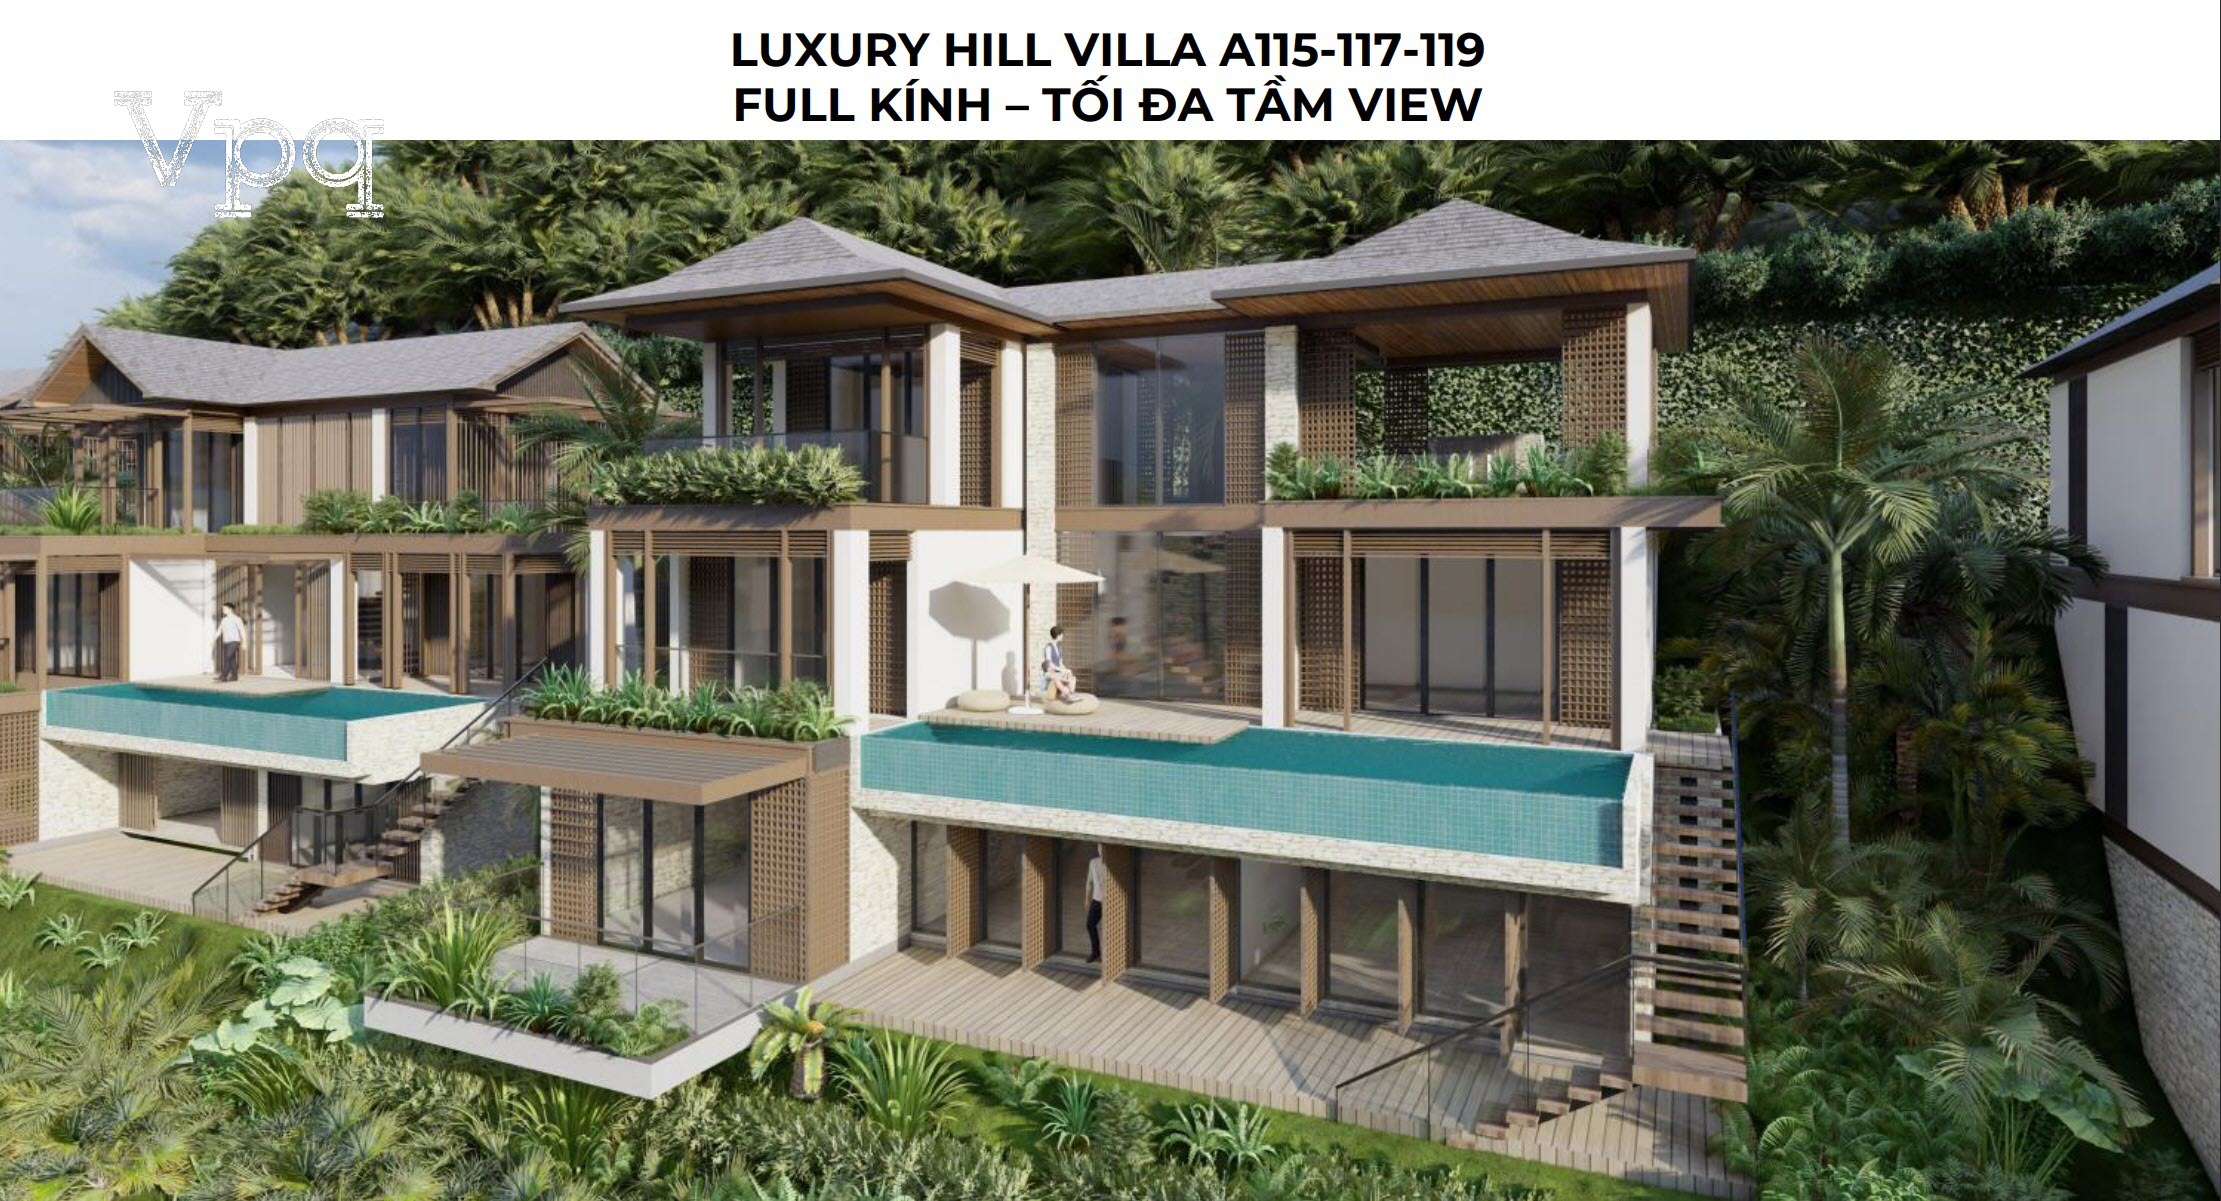 Luxury Hill Villa A115-A117-A119: Full kính tối đa tầm view